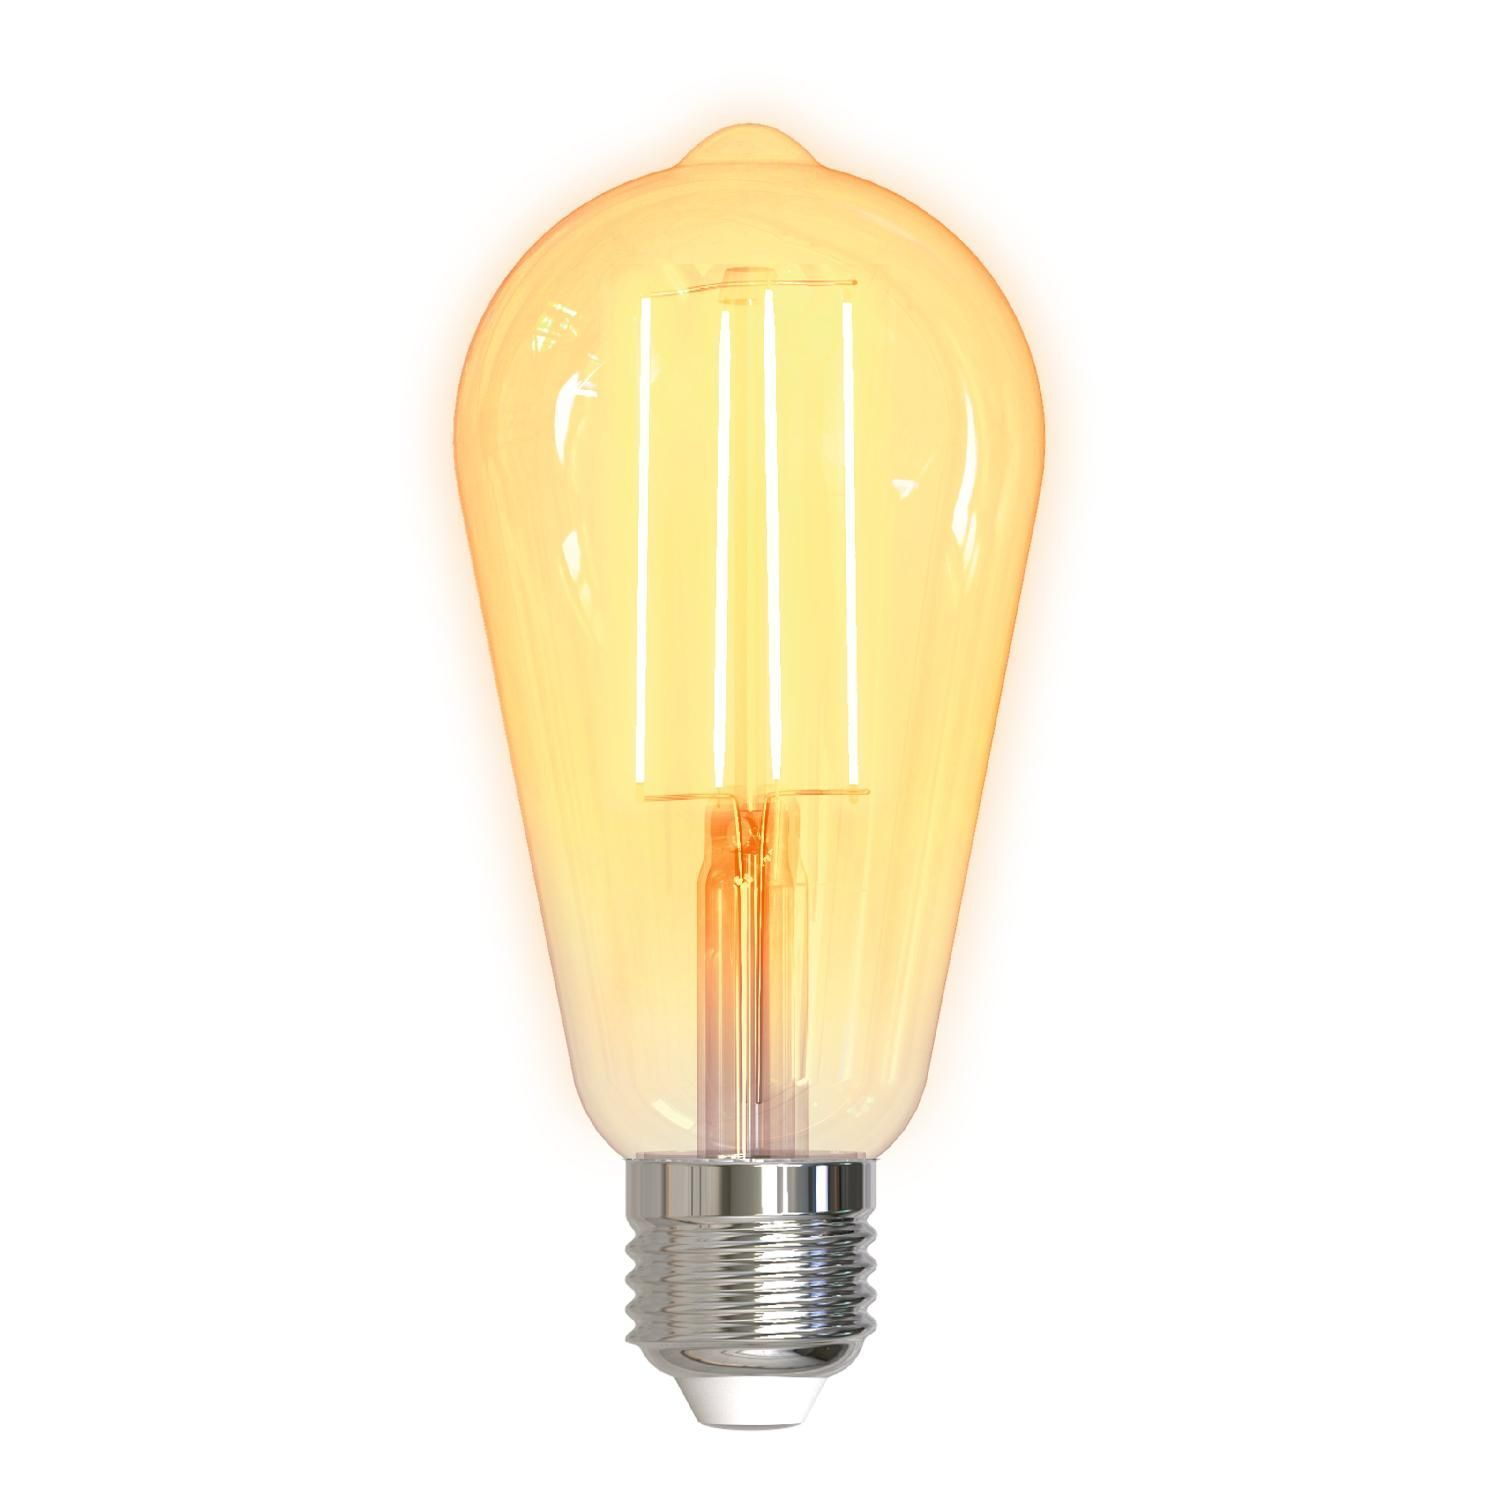 DELTACO SMART HOME SMART E27 Lampe LED weiß dekorative smart HOME Glühbirne